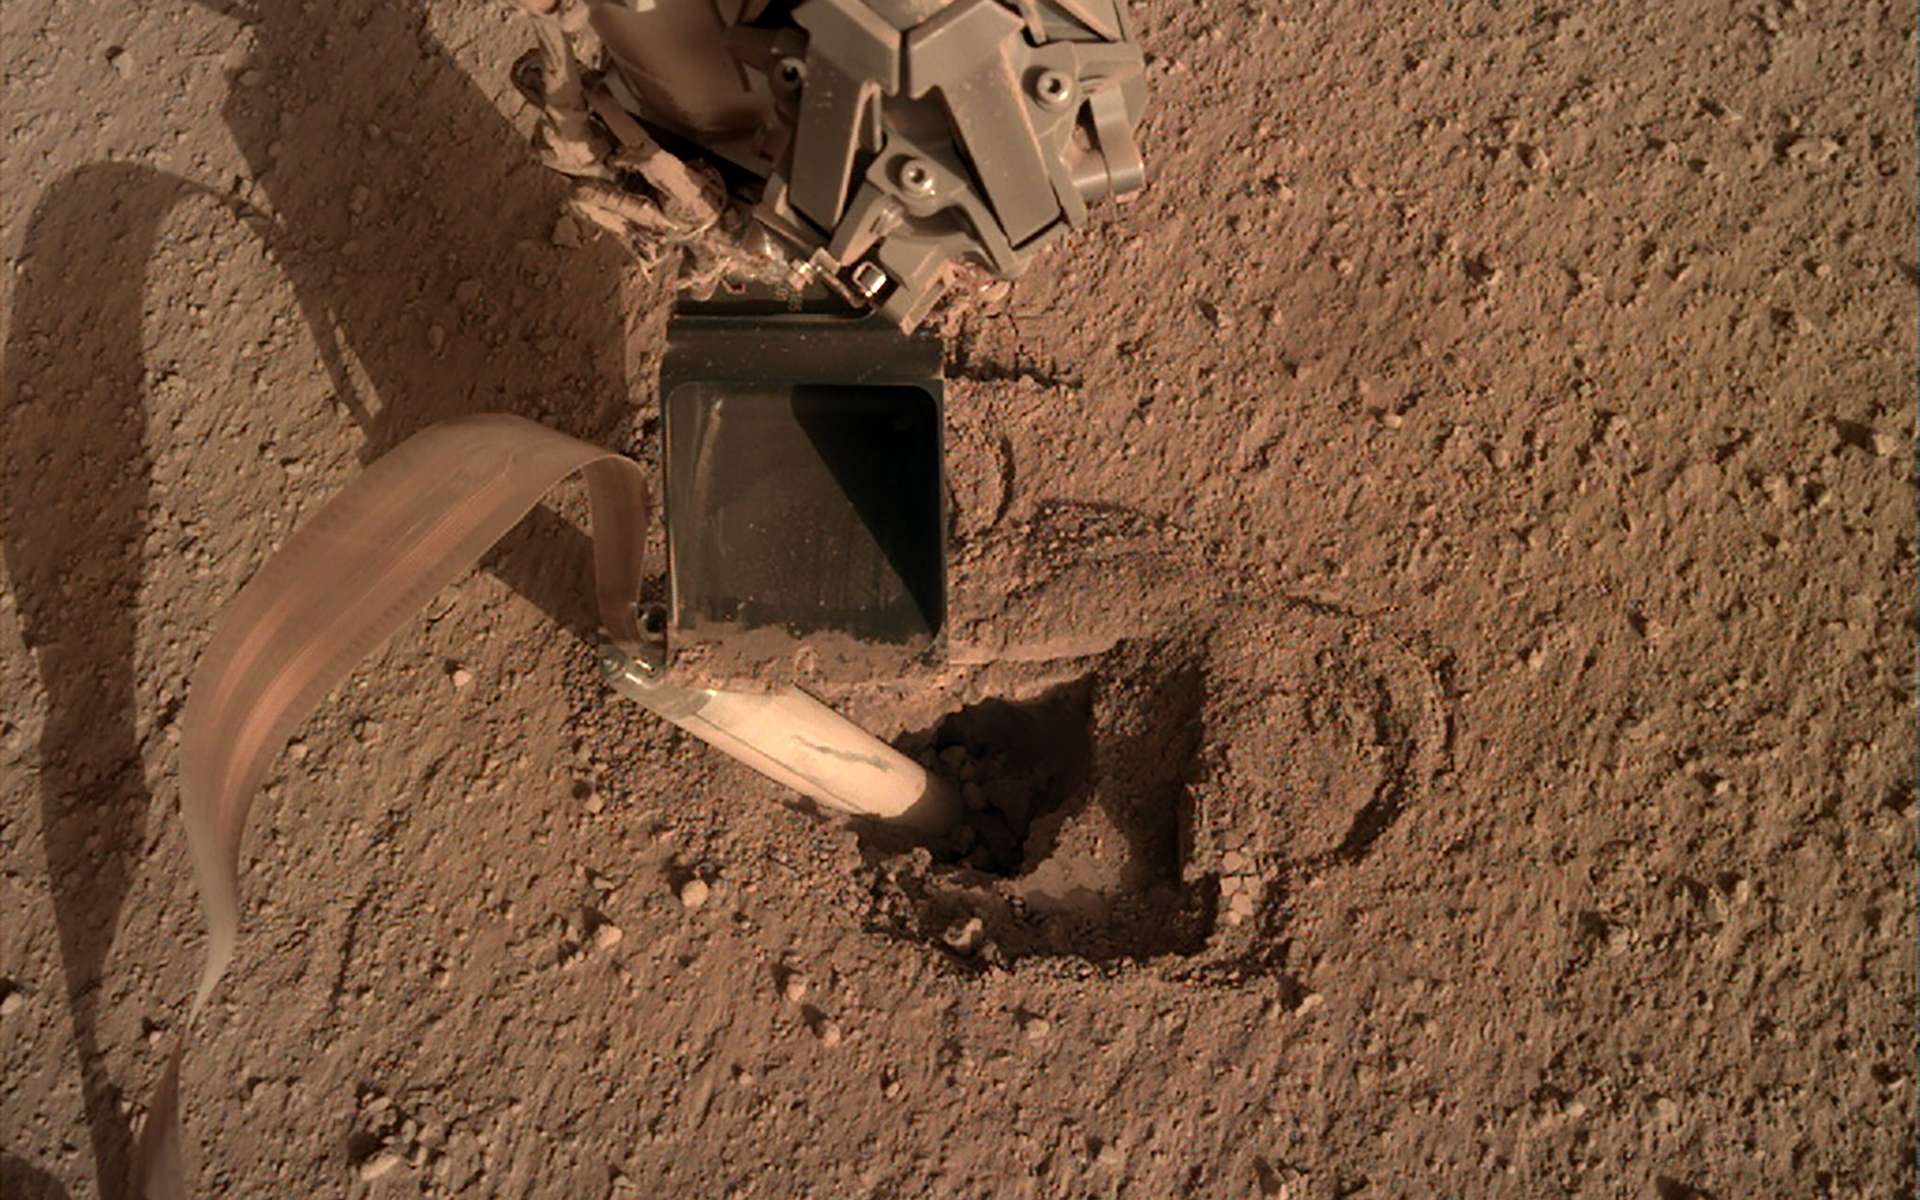 Nasa : opération de la dernière chance pour enfoncer « la taupe » dans le sol de Mars